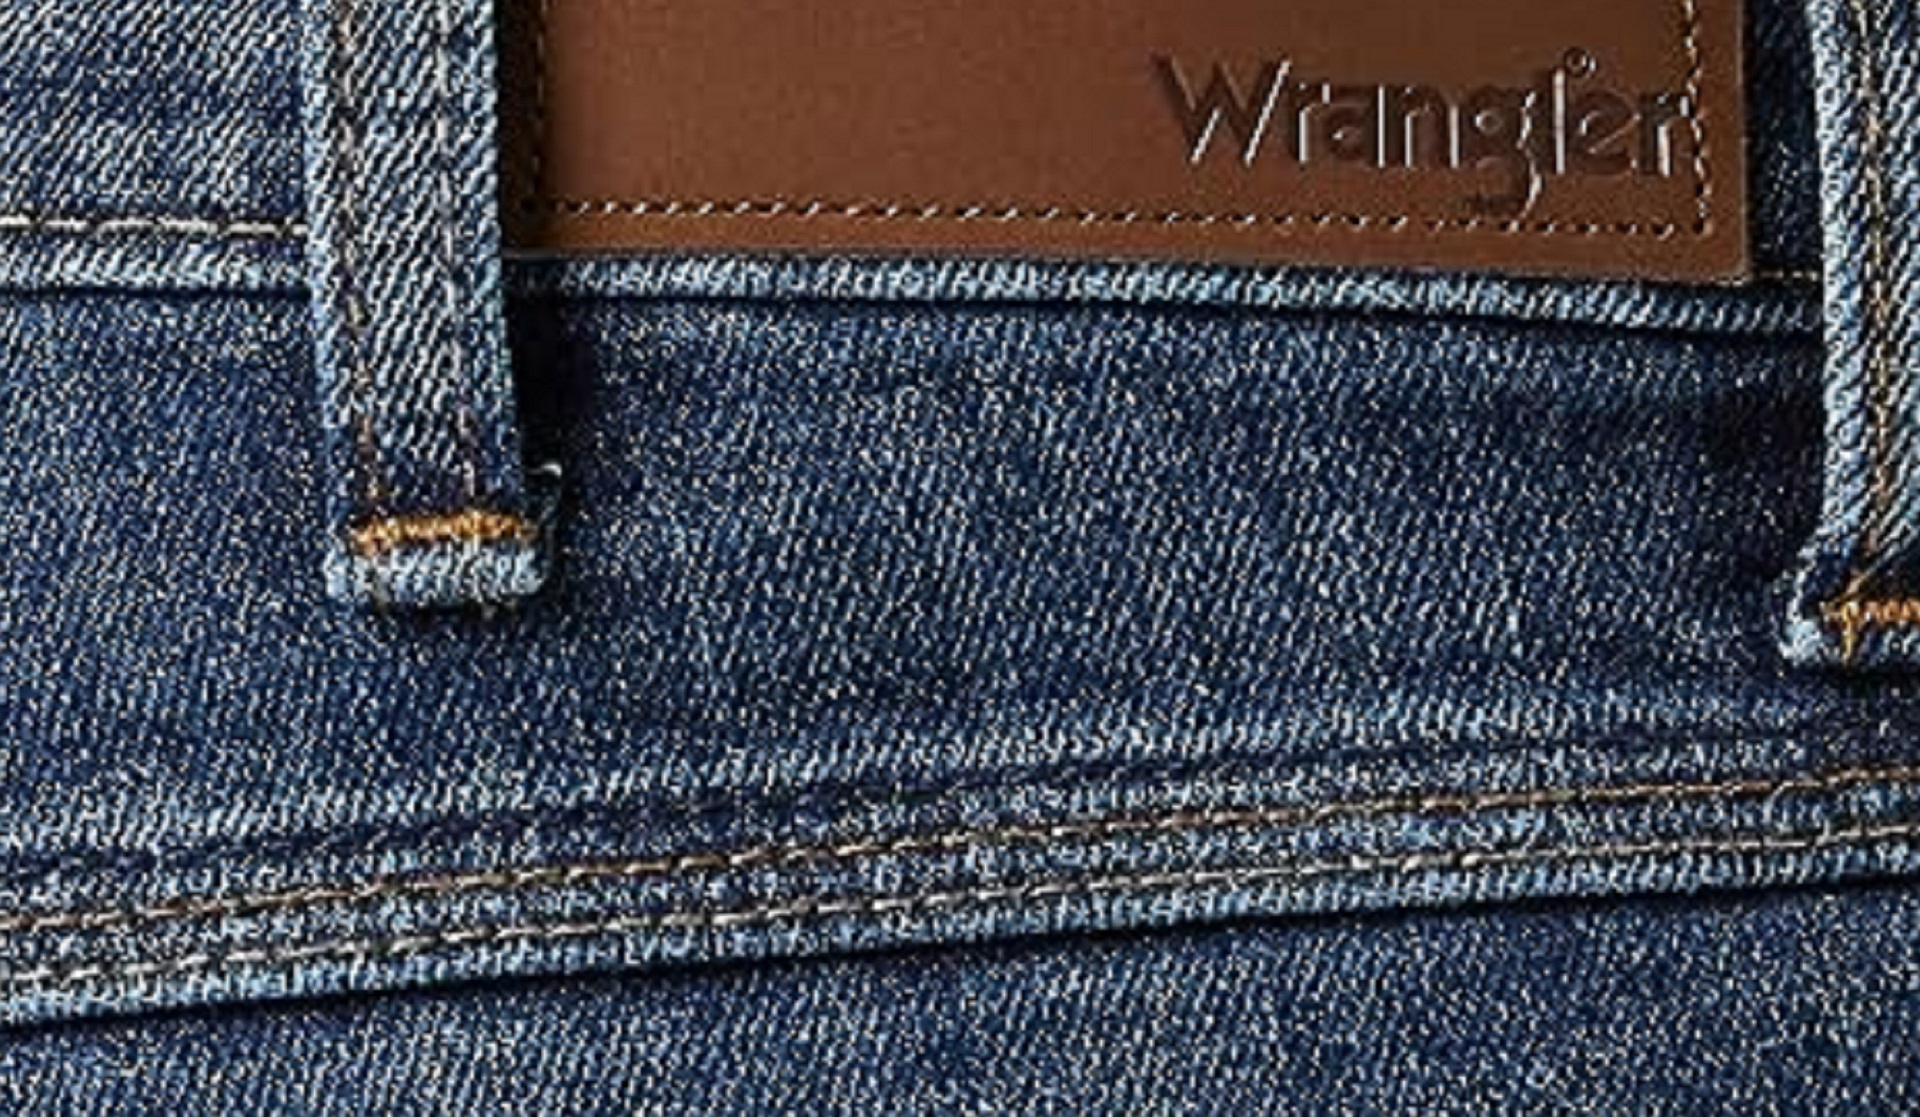 Coutures typiques du jean Wrangler : des coutures à rabats vers le bas